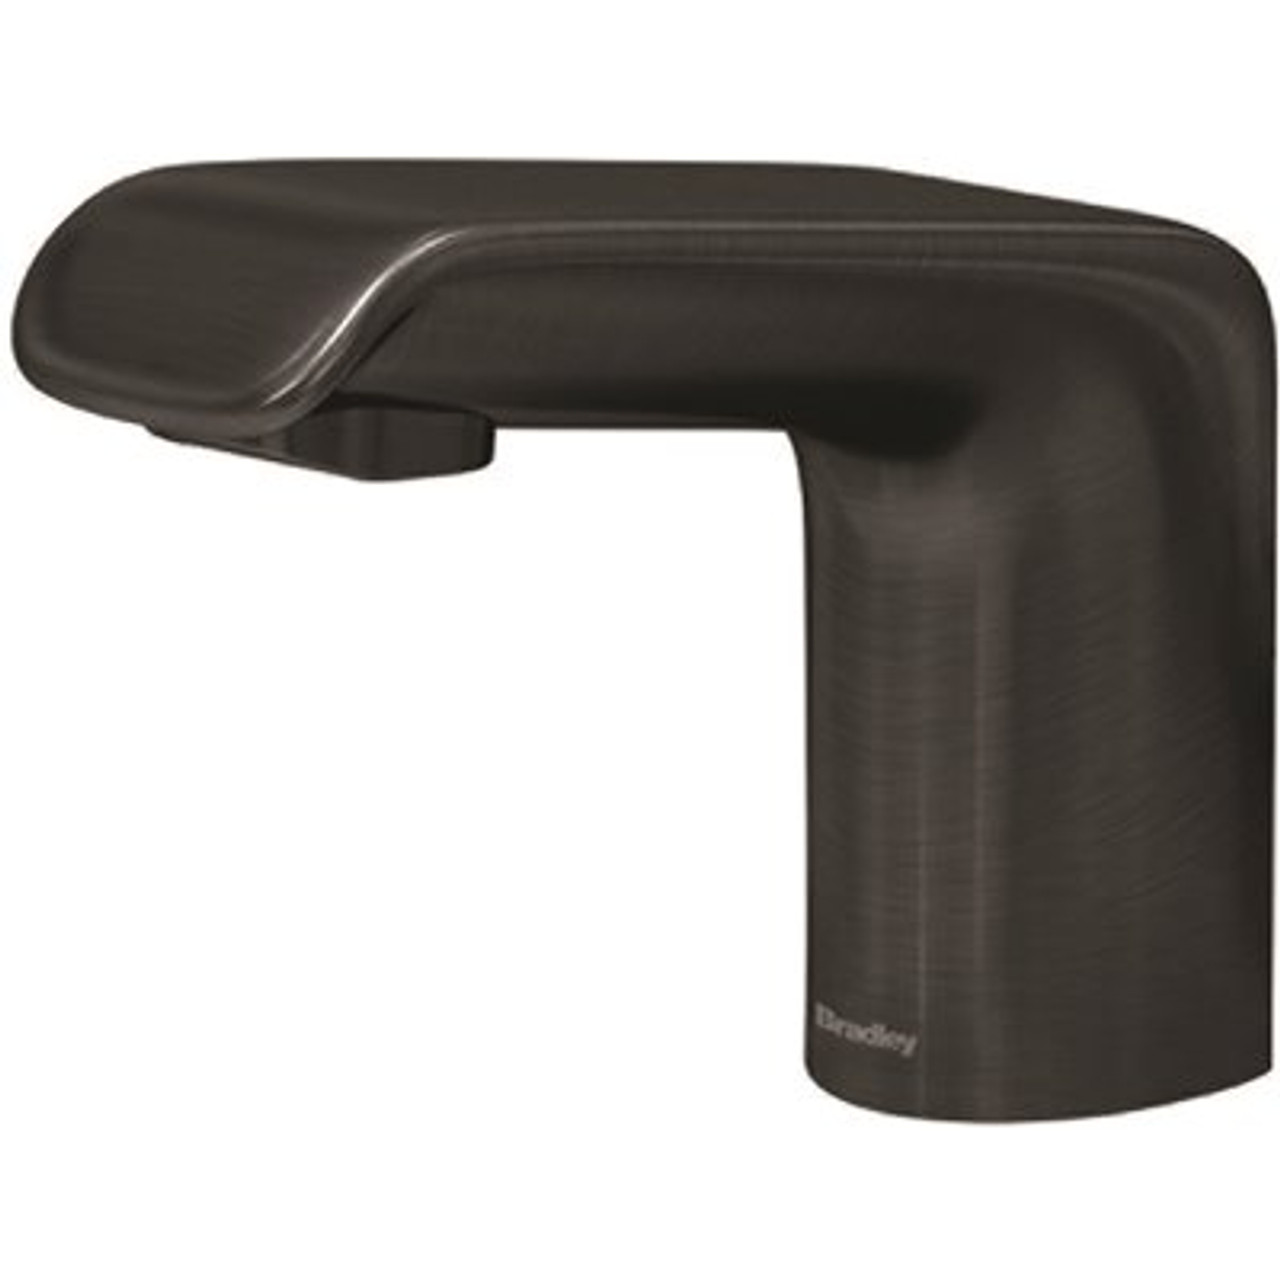 Bradley Linea Verge Faucet In Brushed Black - 313831538